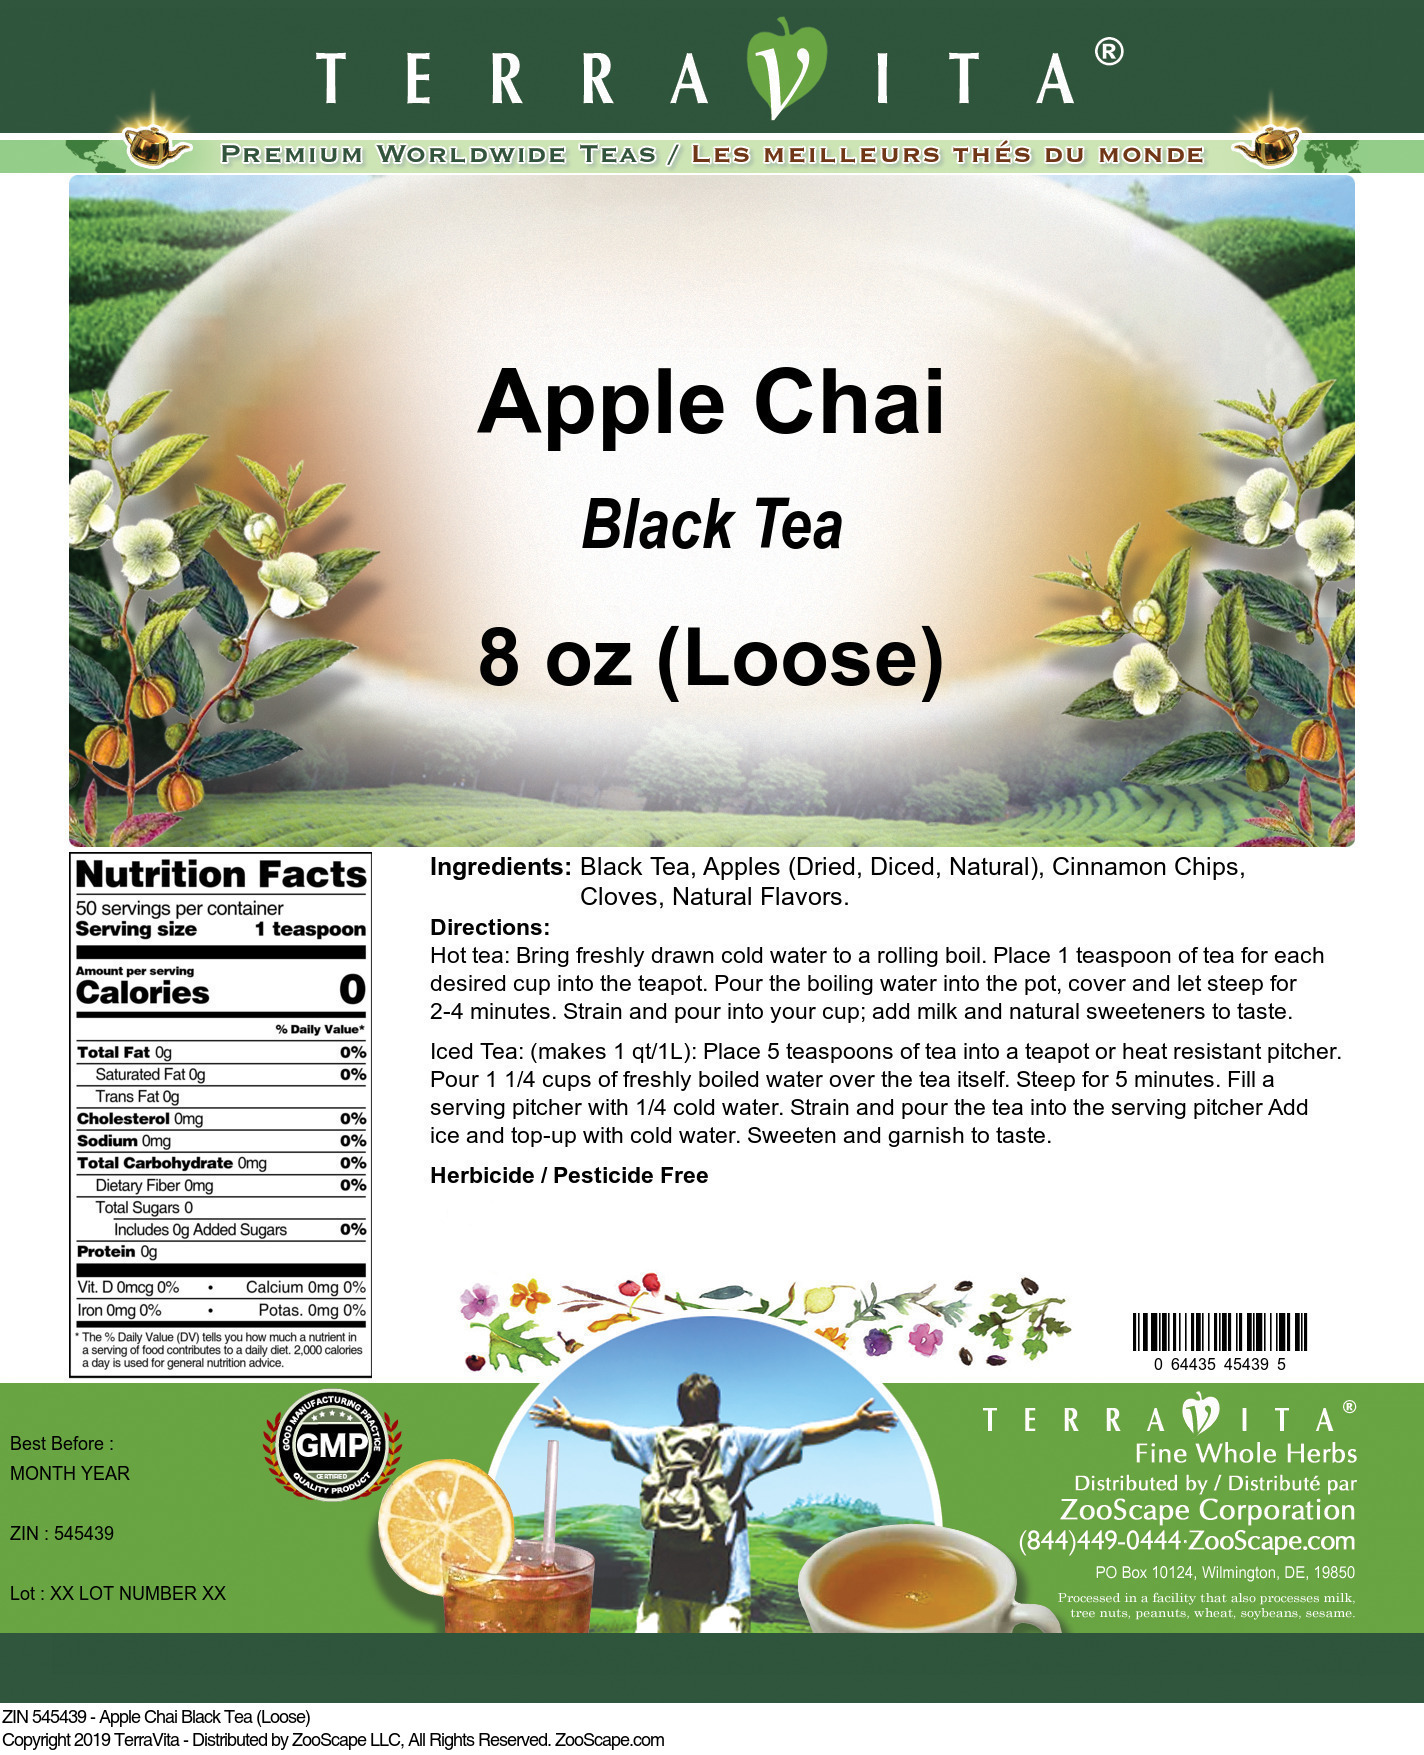 Apple Chai Black Tea (Loose) - Label